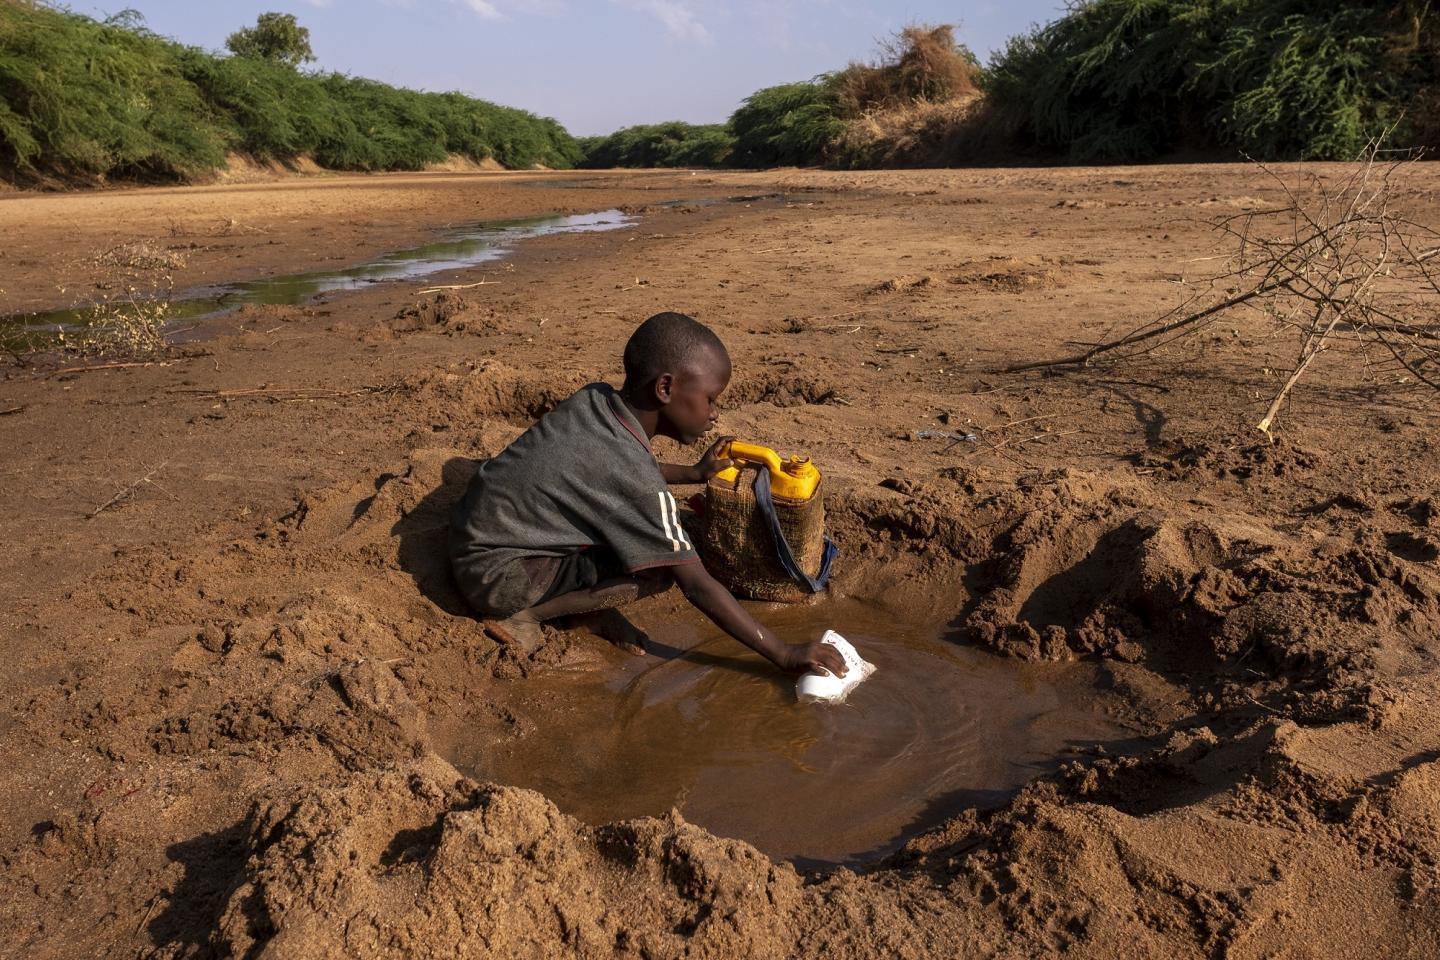 Các gia đình đói khổ ở Somalia đã phải vất vả trong nhiều ngày hoặc nhiều tuần qua địa hình khô cằn để tìm kiếm sự hỗ trợ. Ảnh: @AFP.